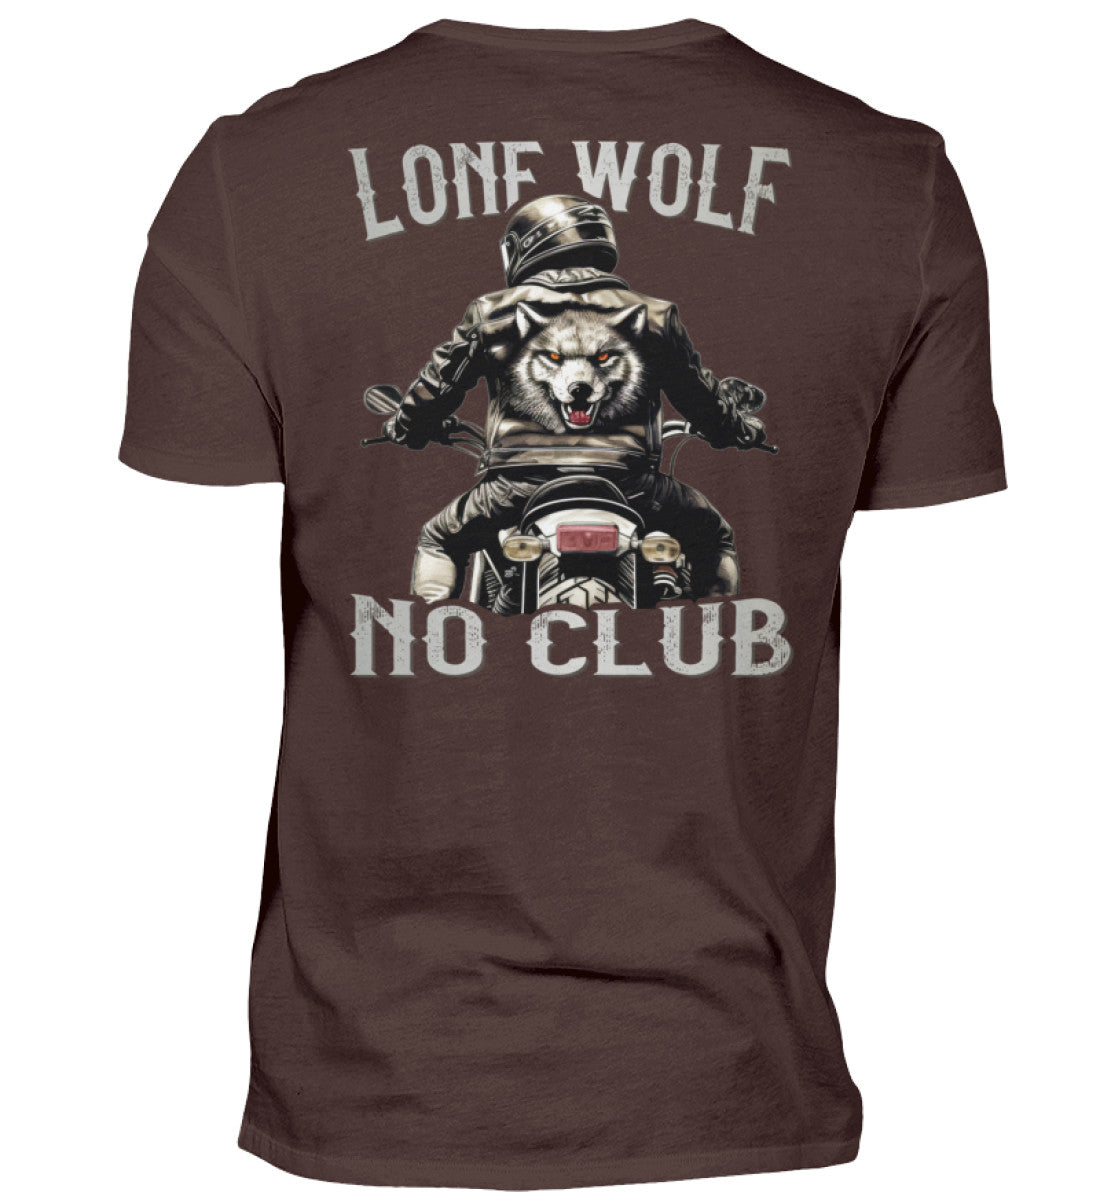 Ein Biker T-Shirt für Motorradfahrer von Wingbikers mit dem Aufdruck, Lone Wolf - No Club, als Back Print, in braun.